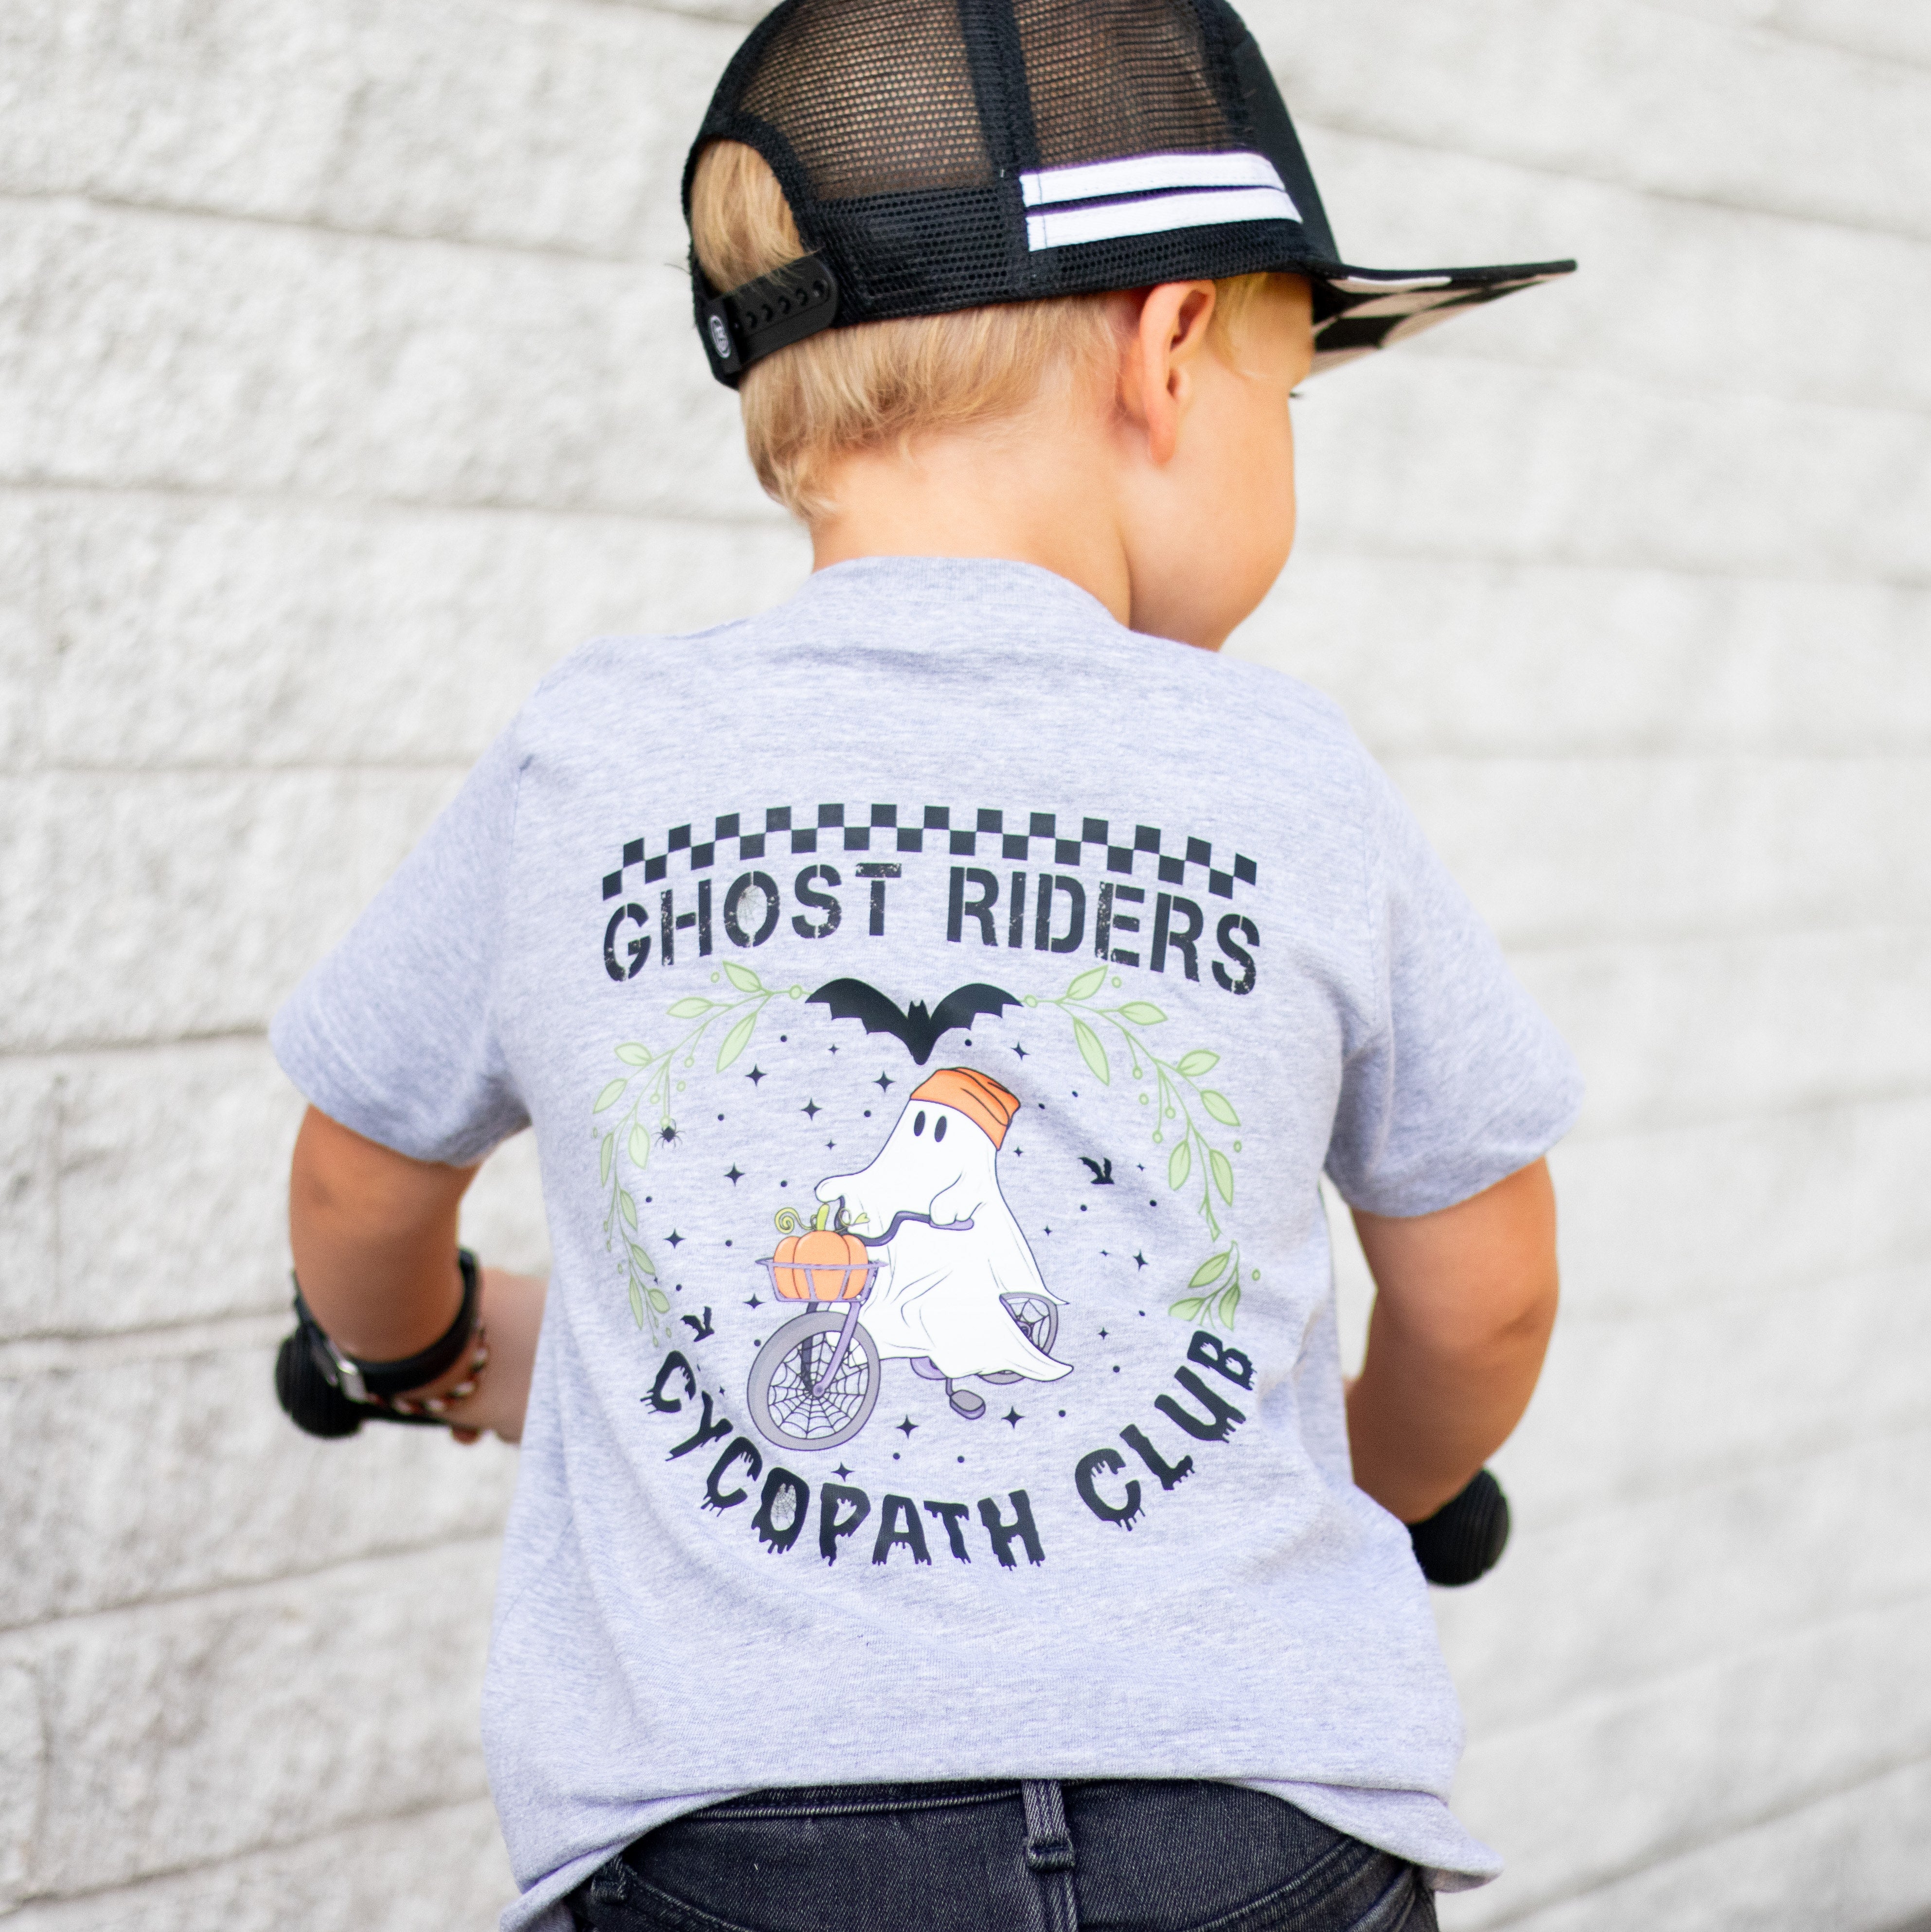 Cycopath Ghost Rider